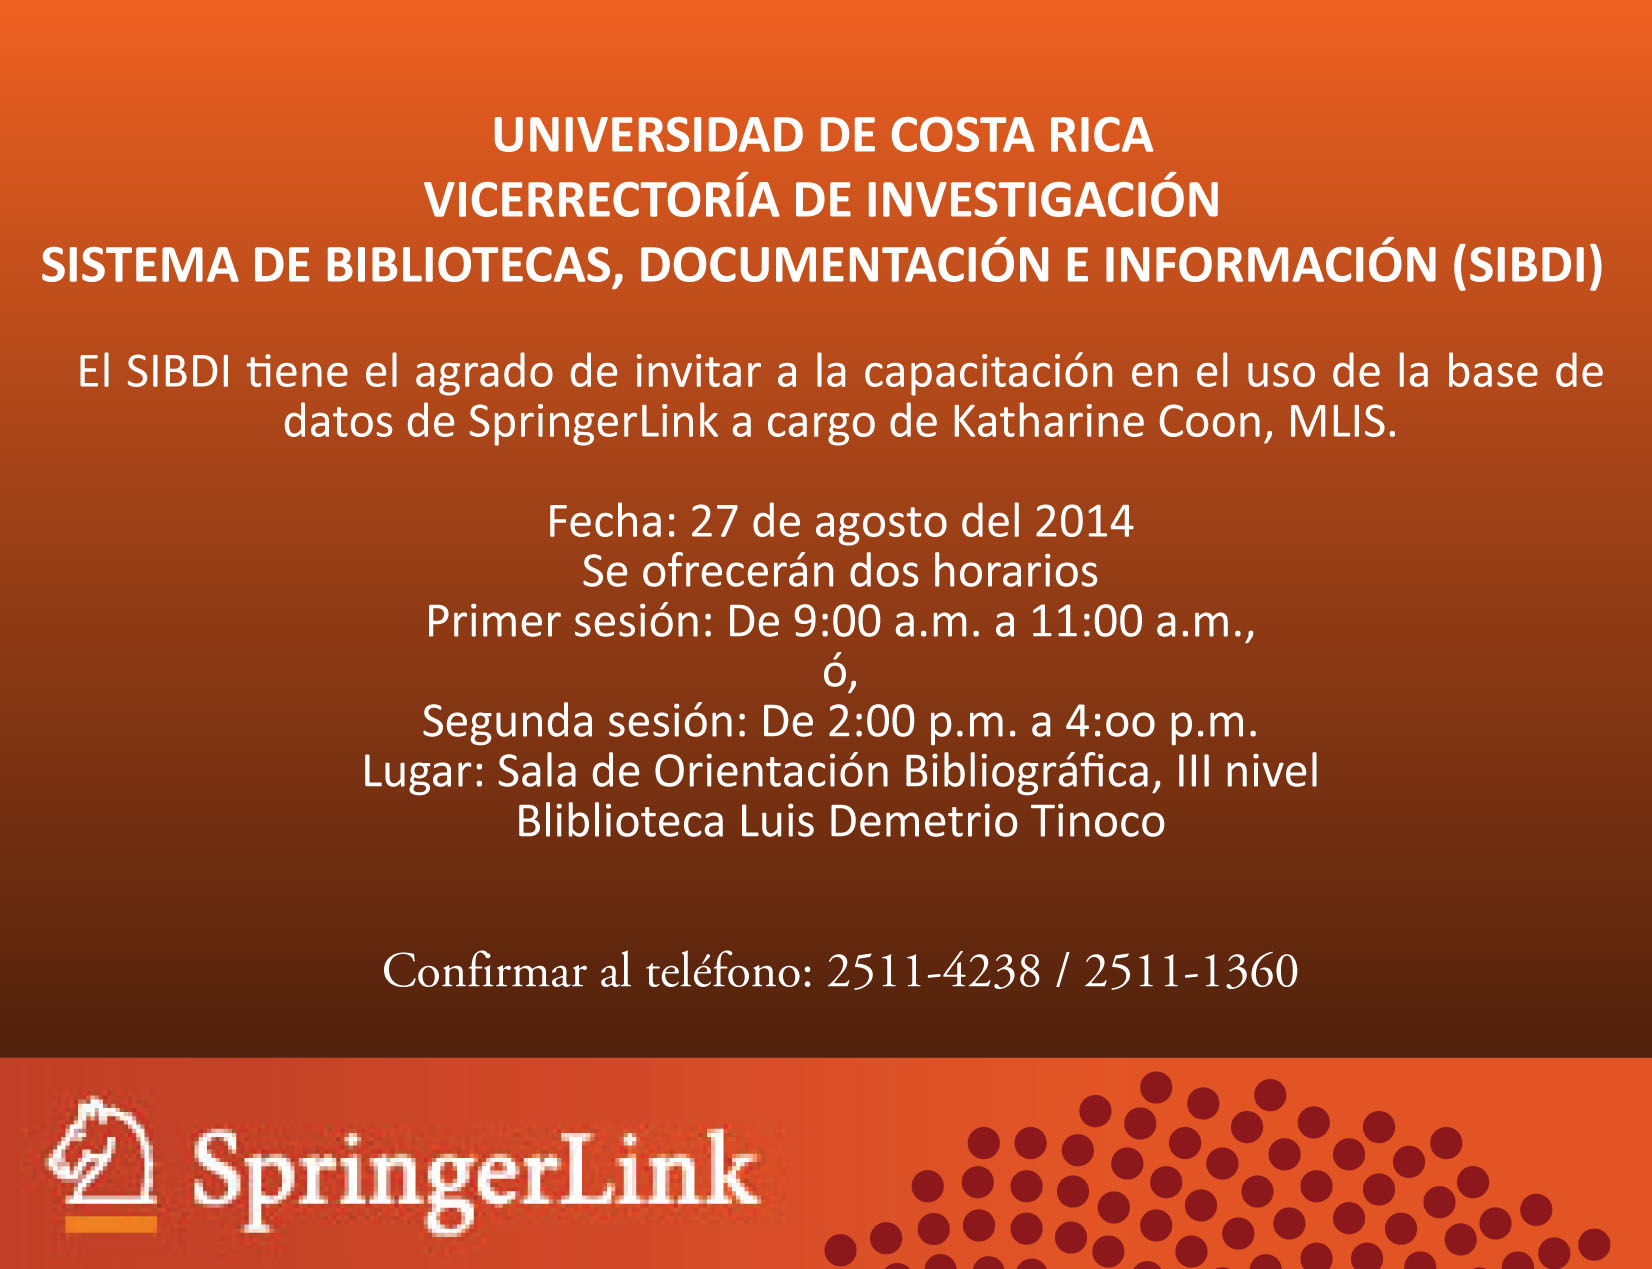  Impartida por la Sra. Katharine Coon, MLIS, representante SpringerLink para América Latina y el …